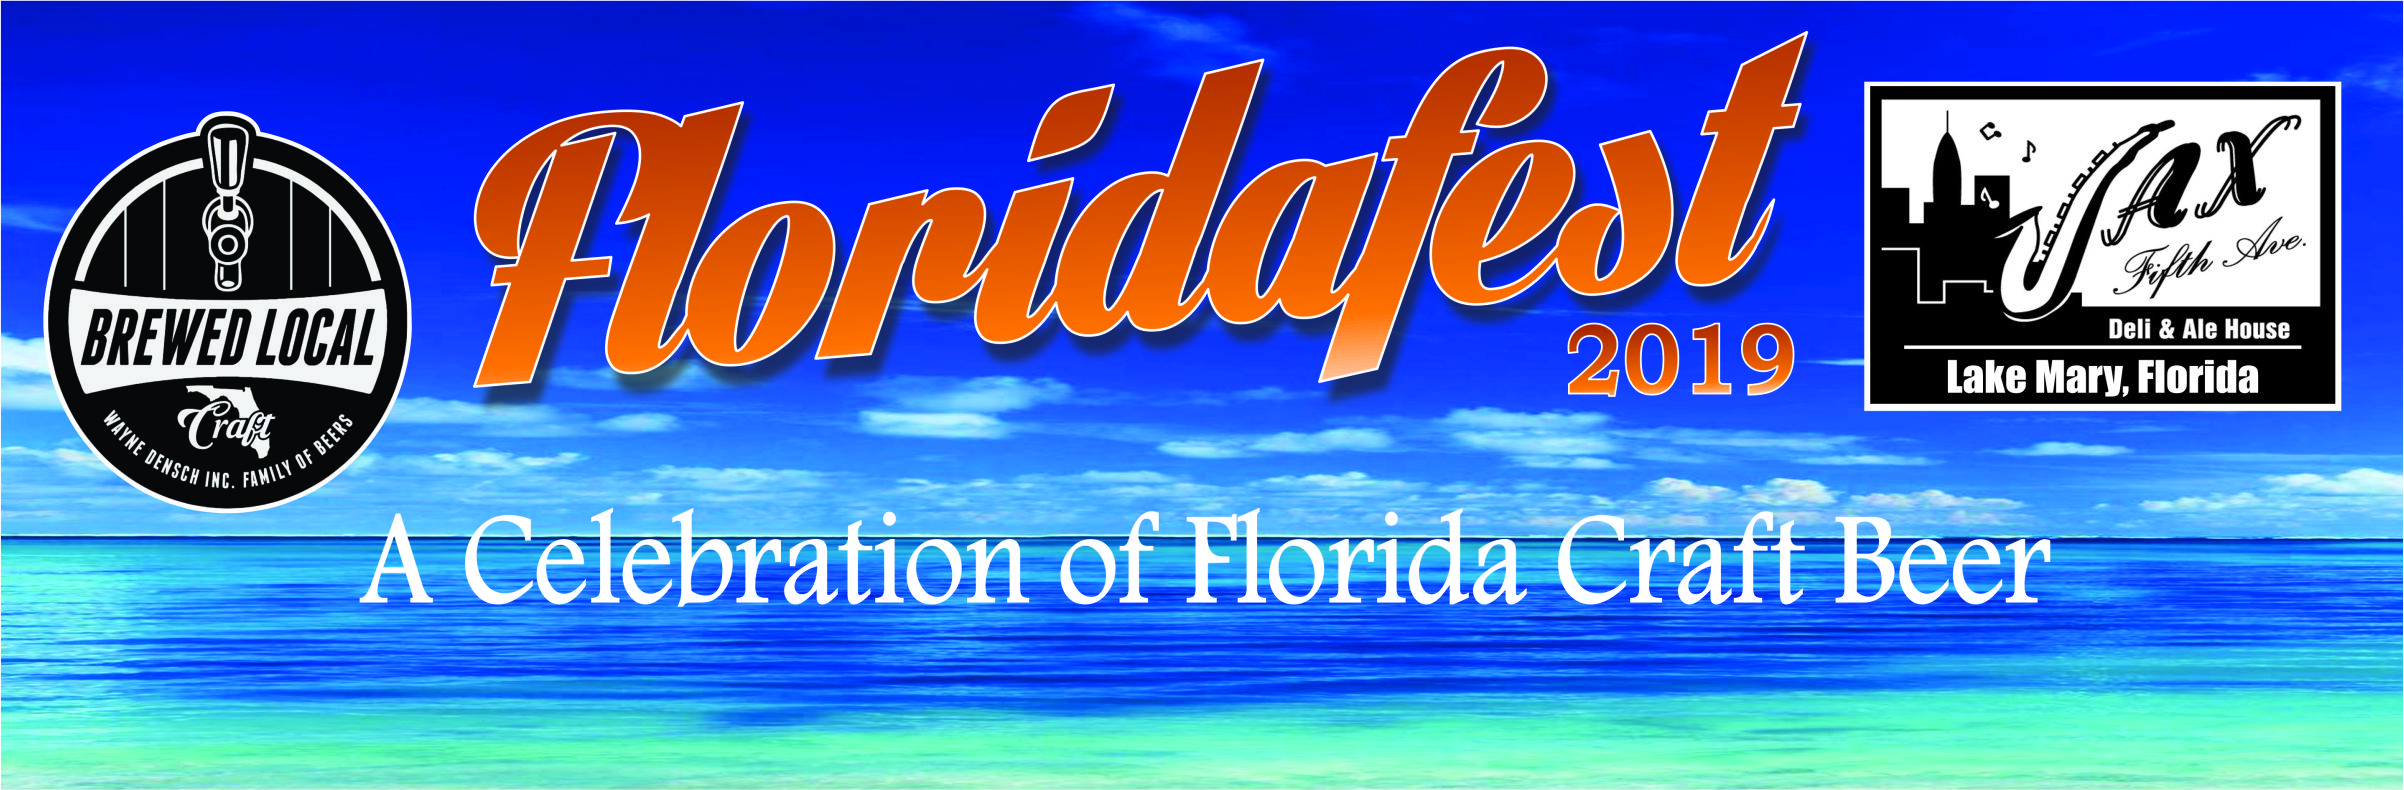 Floridafest banner image